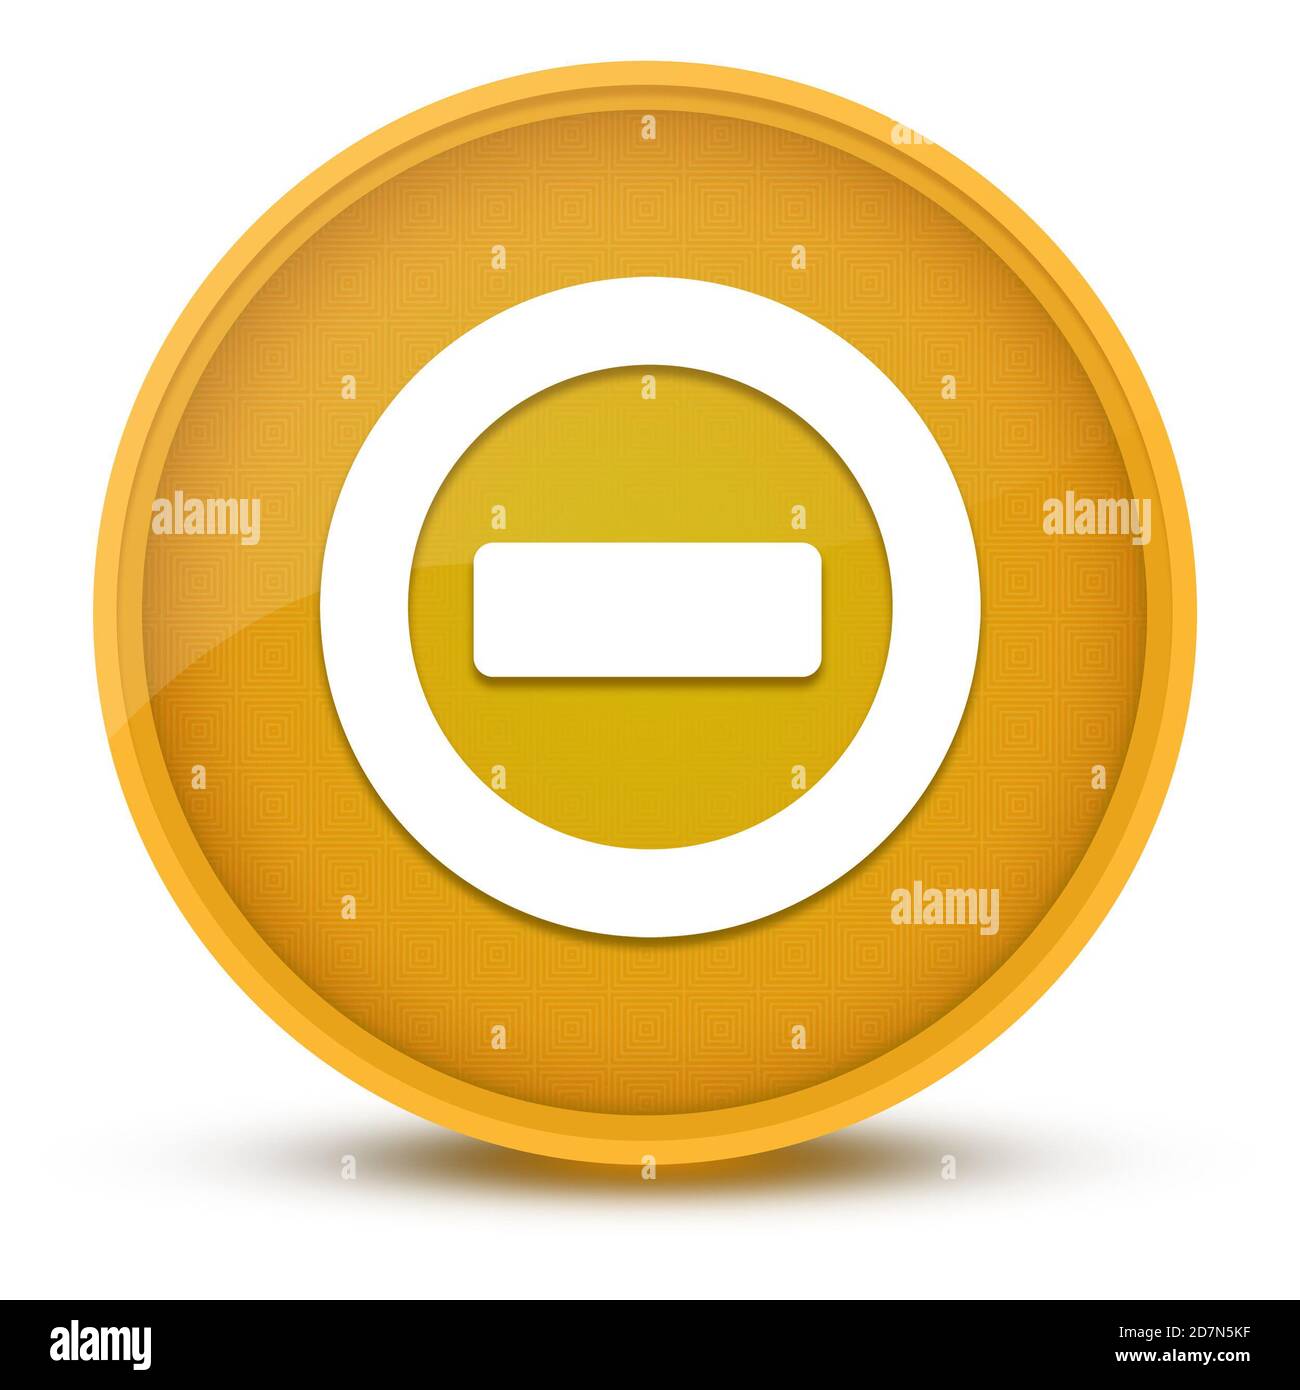 ERREUR luxueux bouton rond jaune brillant illustration abstraite Banque D'Images